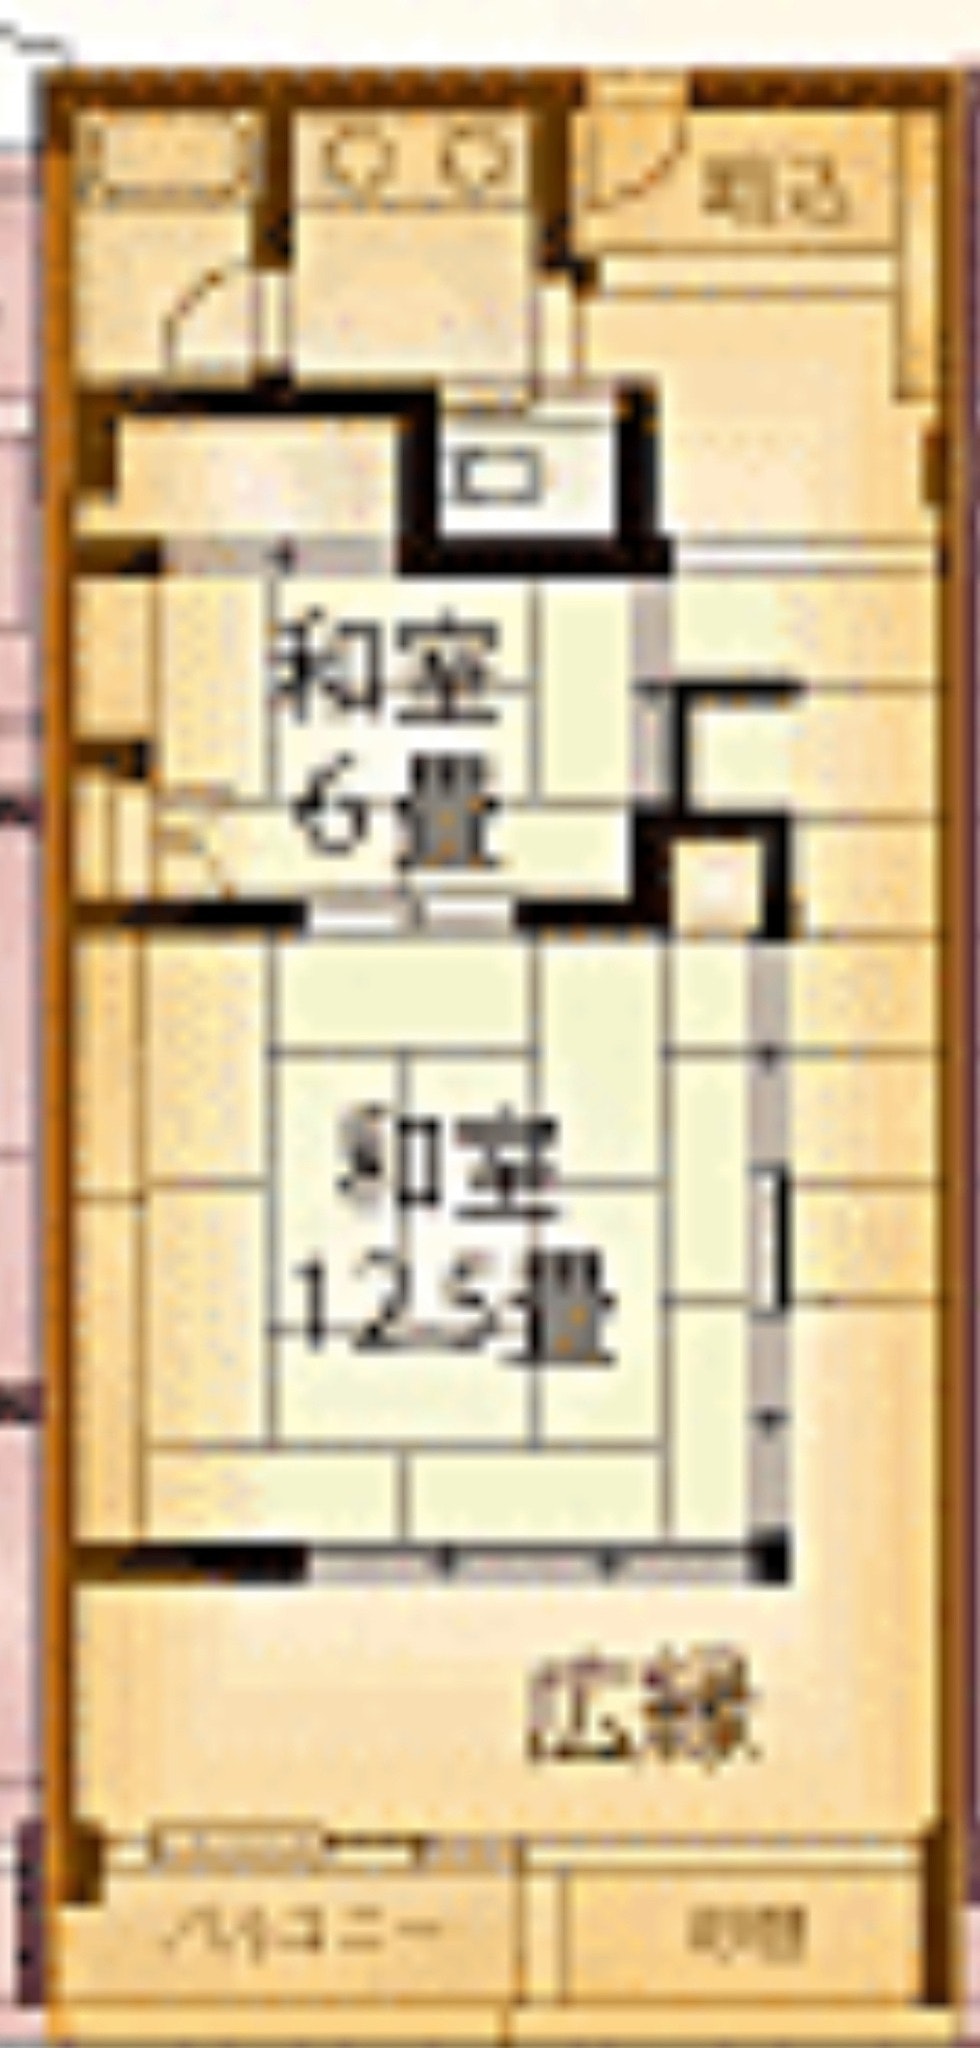 【202】熱海駅5分 海2分 和室2間+洋間1間(70m2)プロジェクター付き 